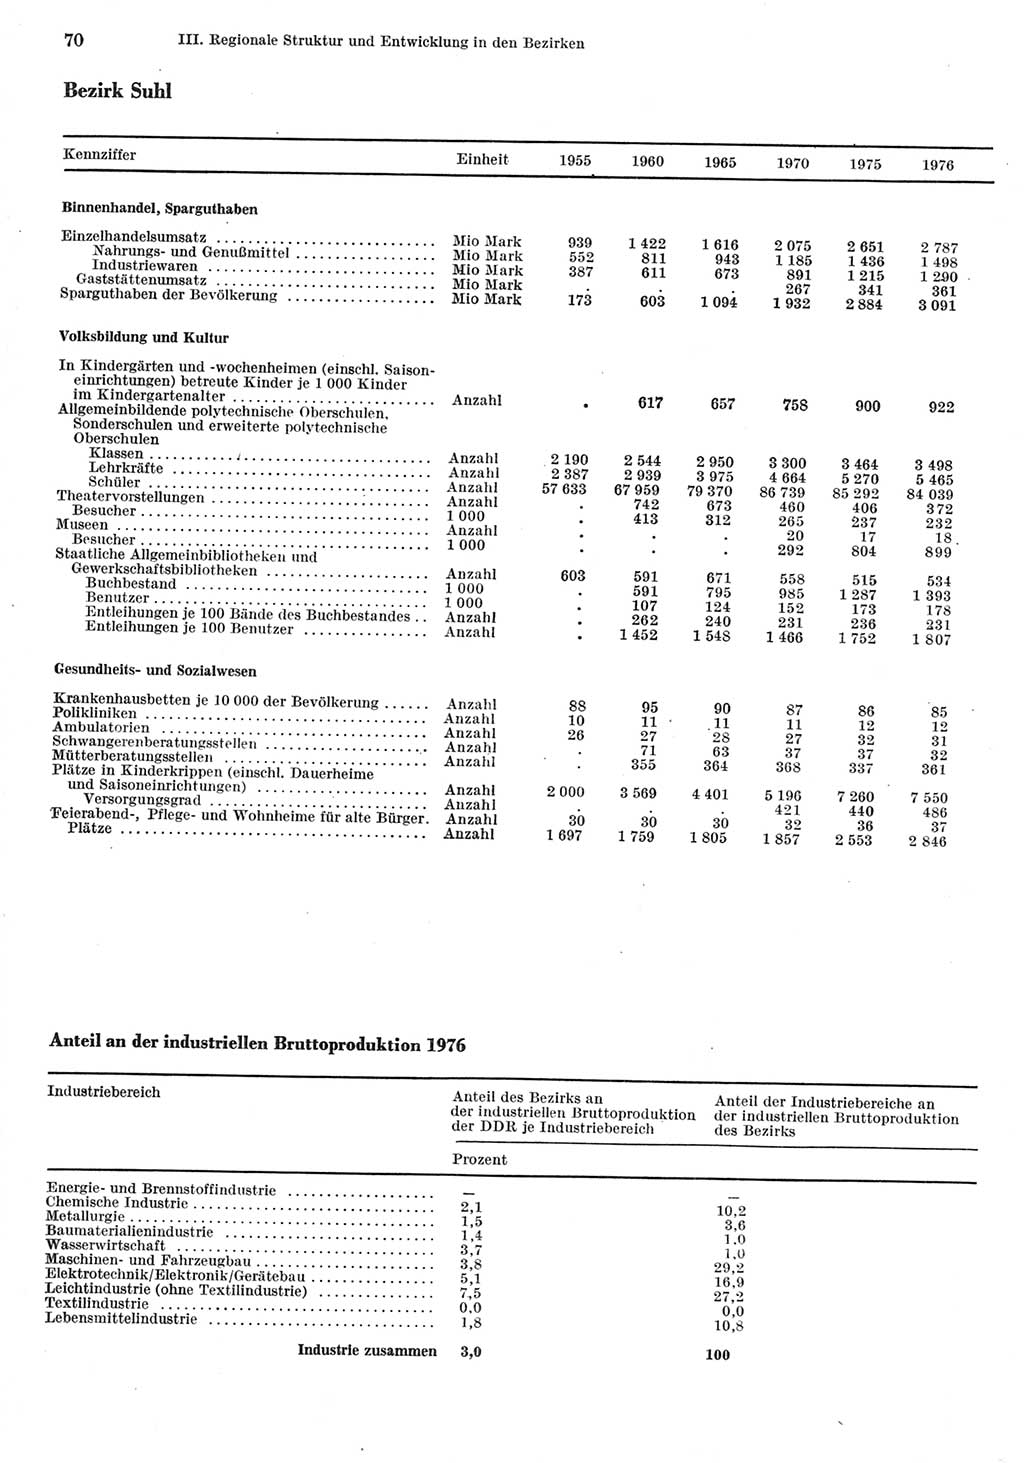 Statistisches Jahrbuch der Deutschen Demokratischen Republik (DDR) 1977, Seite 70 (Stat. Jb. DDR 1977, S. 70)